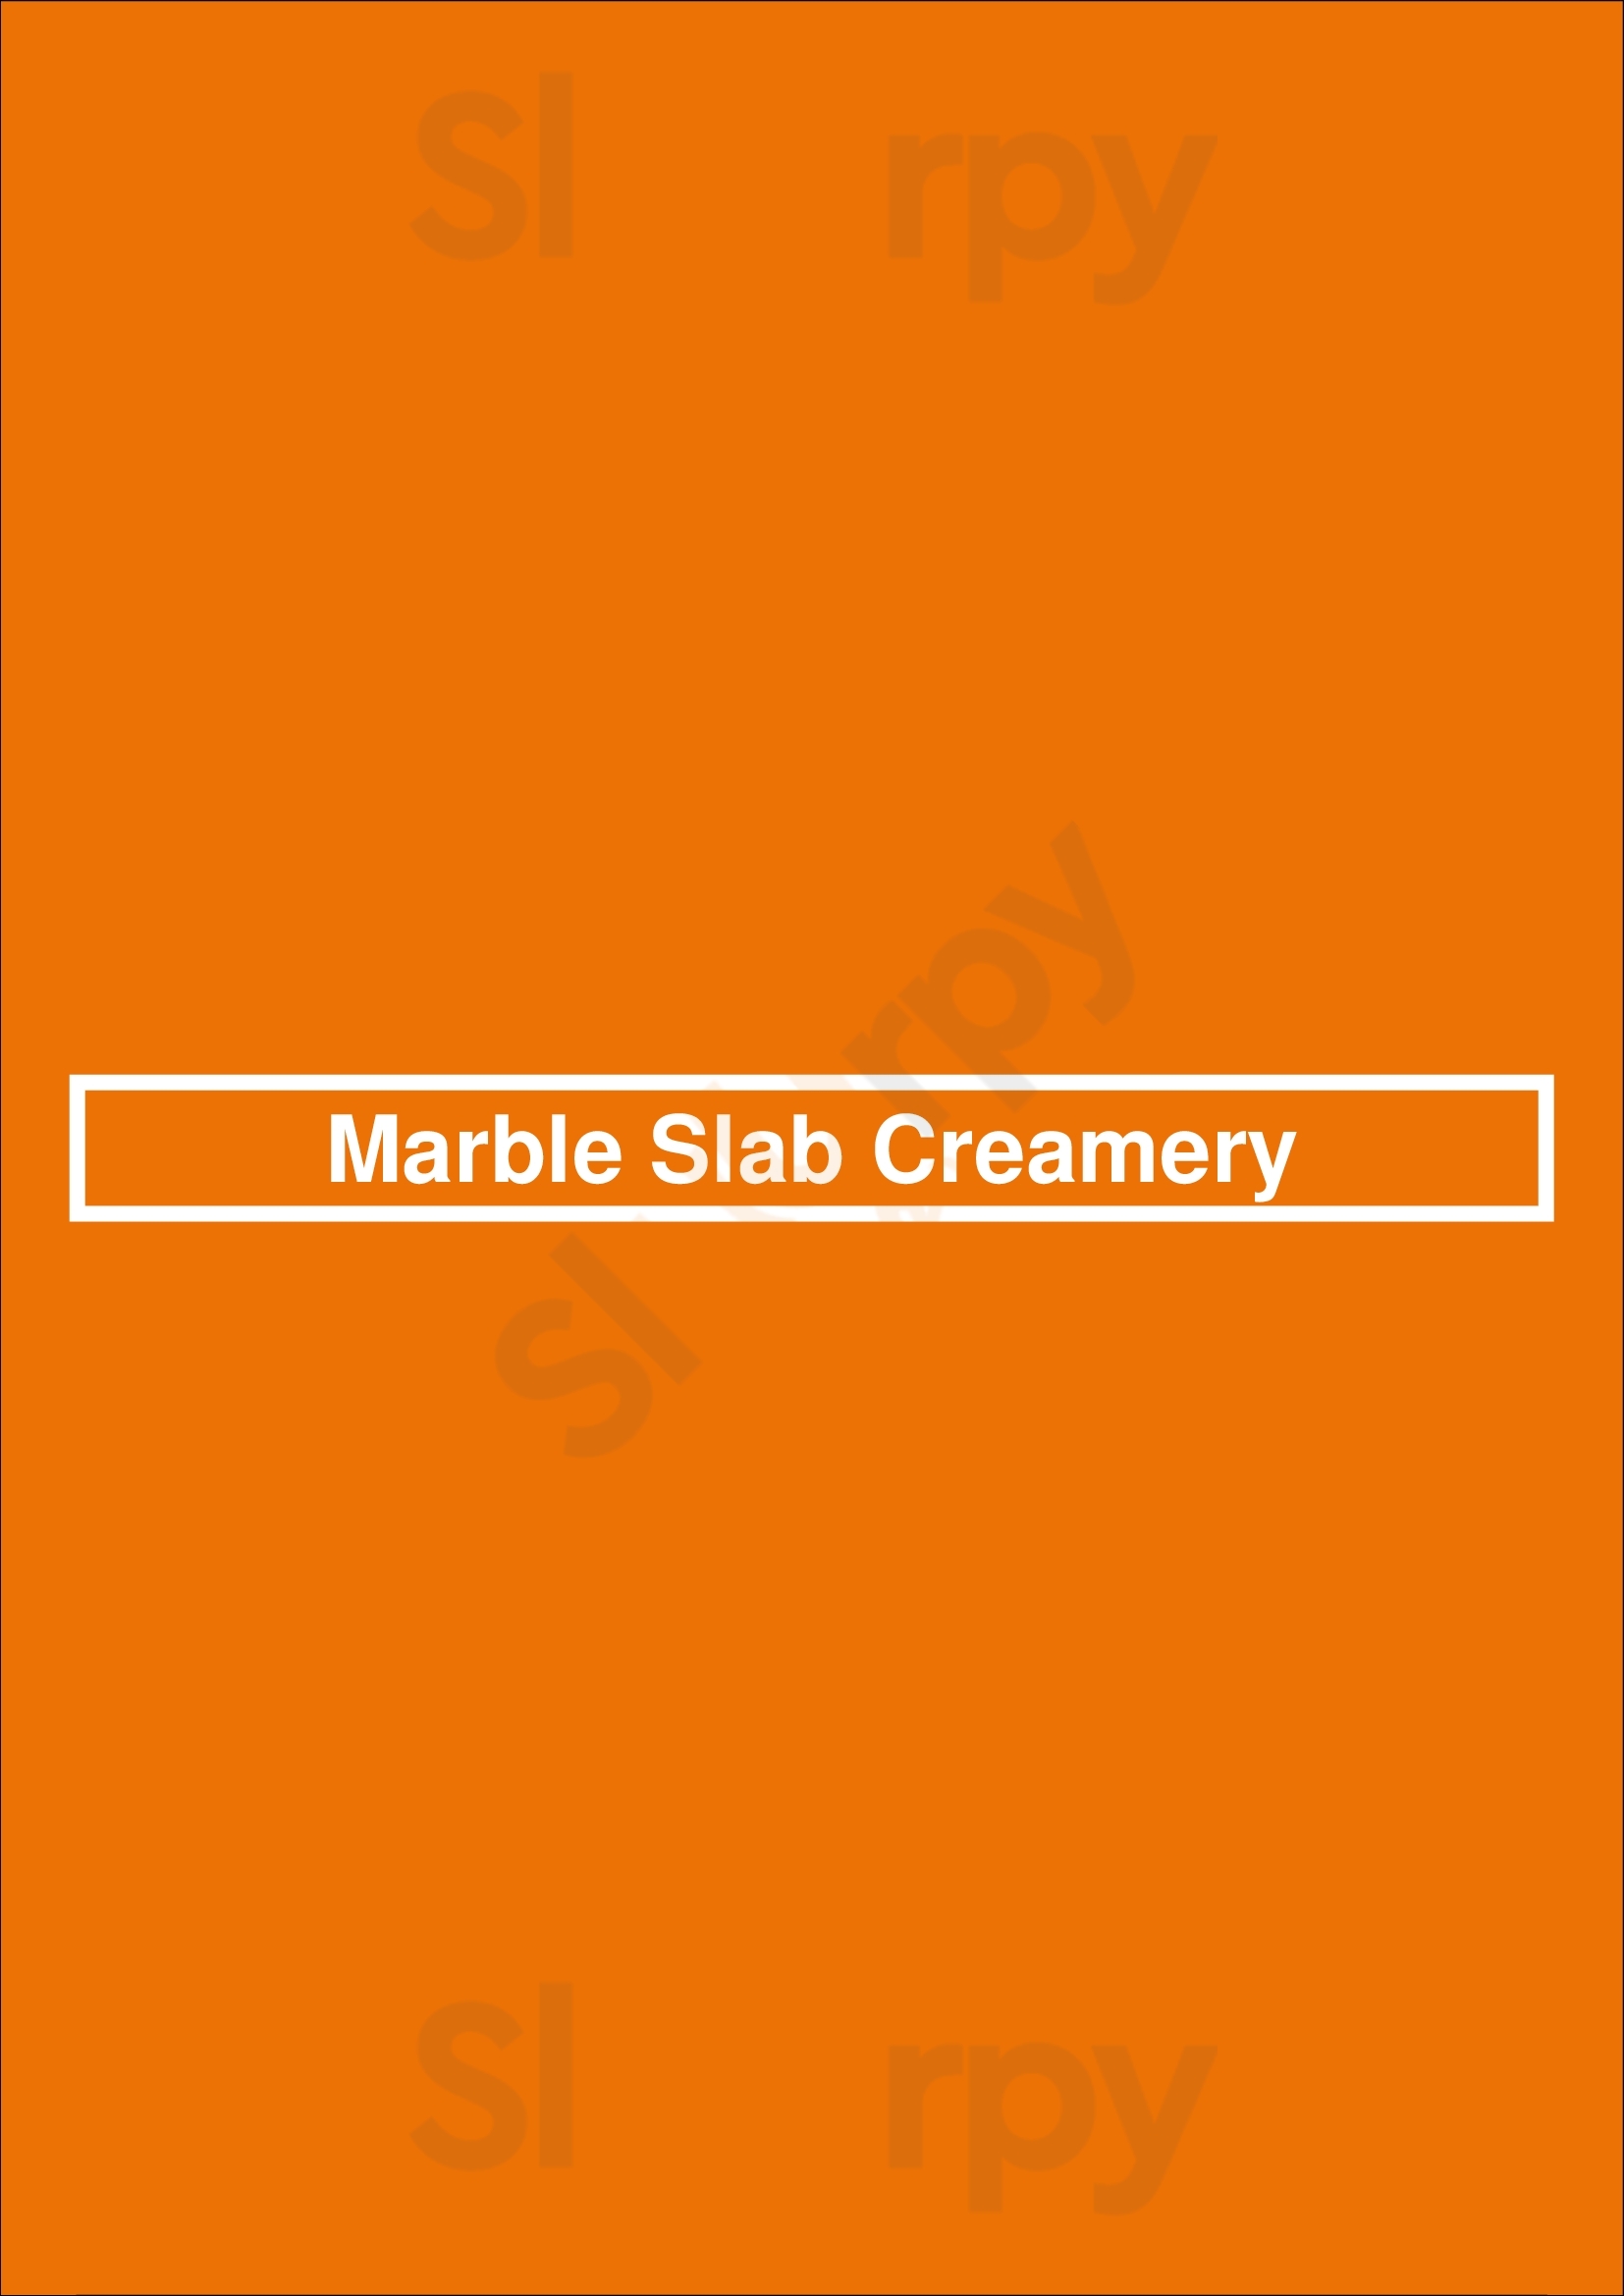 Marble Slab Creamery Mississauga Menu - 1